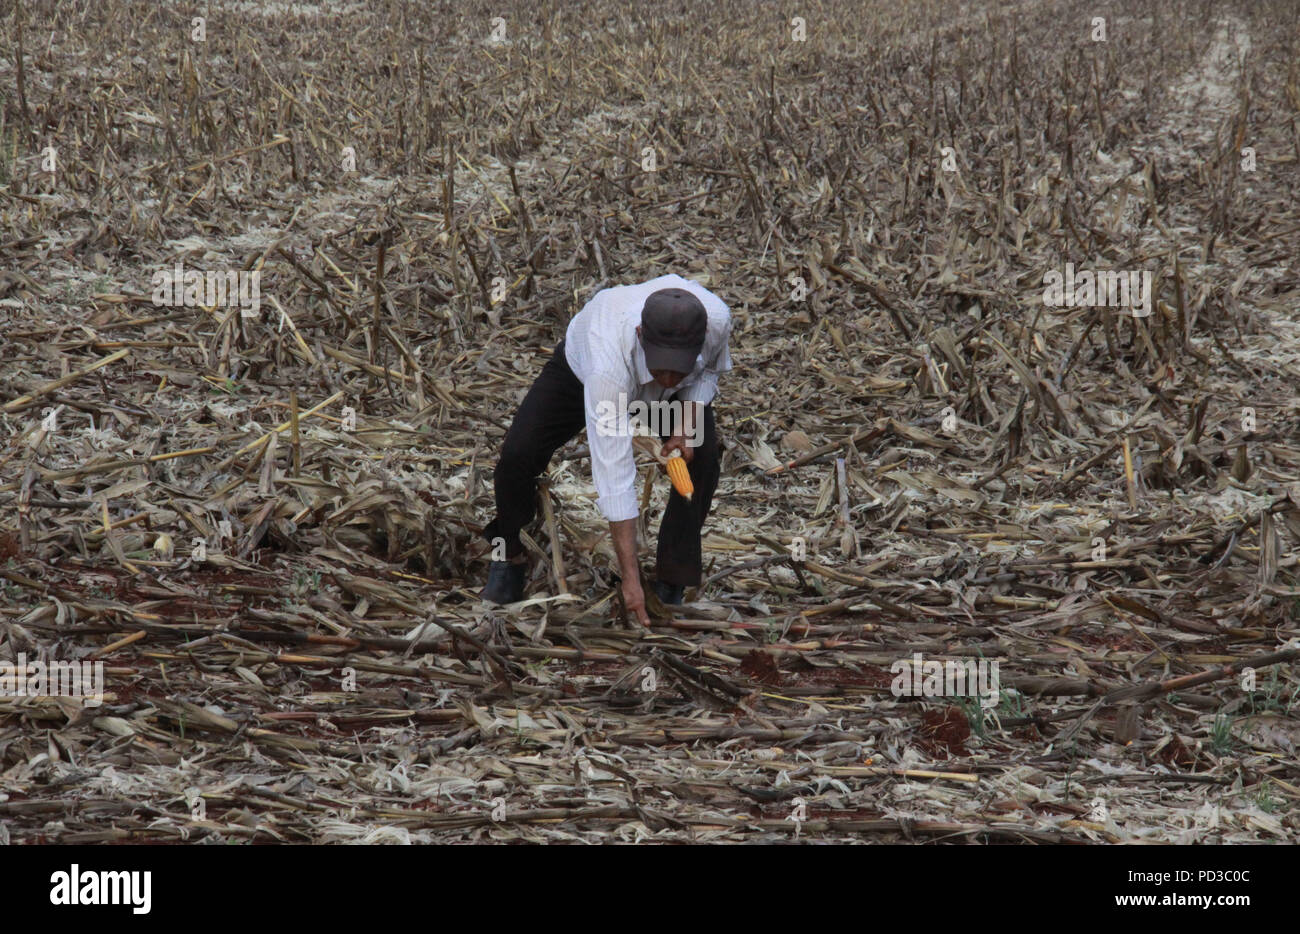 CAMPO MOURÃO, PR - 06.08.2018: TRABALHADORES COLHEM SOBRA DE MILHO - Kleinbauern in Campo Mourão, in der Region Paraná Central-West, nutzen das regnerische Wetter und die Unterbrechung der Ernte, Mais Schalen durch den Erntemaschinen links, um sie zu entfernen. Das Getreide wird füttern die Tiere, die rund um die Kulturen. Vor etwa einem Monat, ein starker Sturm abgereichertem Teil der Plantagen, was es schwierig macht, die zur Maisernte eingesetzt. Auf dem Foto ist der ländlichen Arbeiter sammelt Ähren links von der halbpächter. (Foto: dirceu Portugal/Fotoarena) Stockfoto